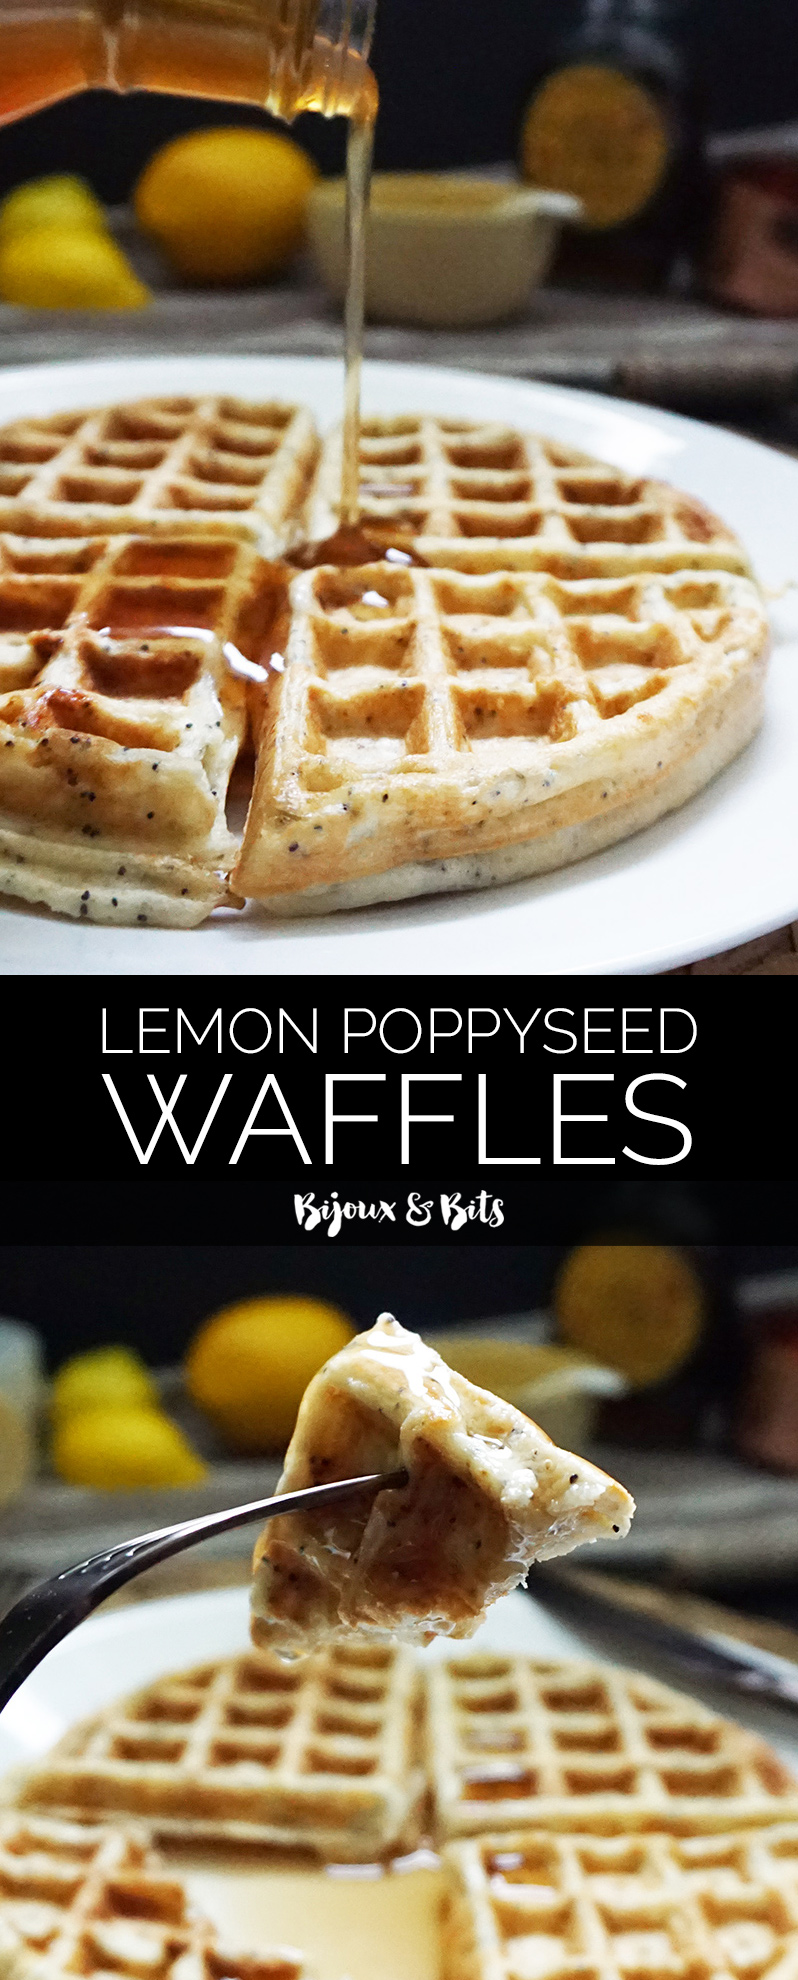 Lemon poppyseed waffles from @bijouxandbits #waffles #recipes